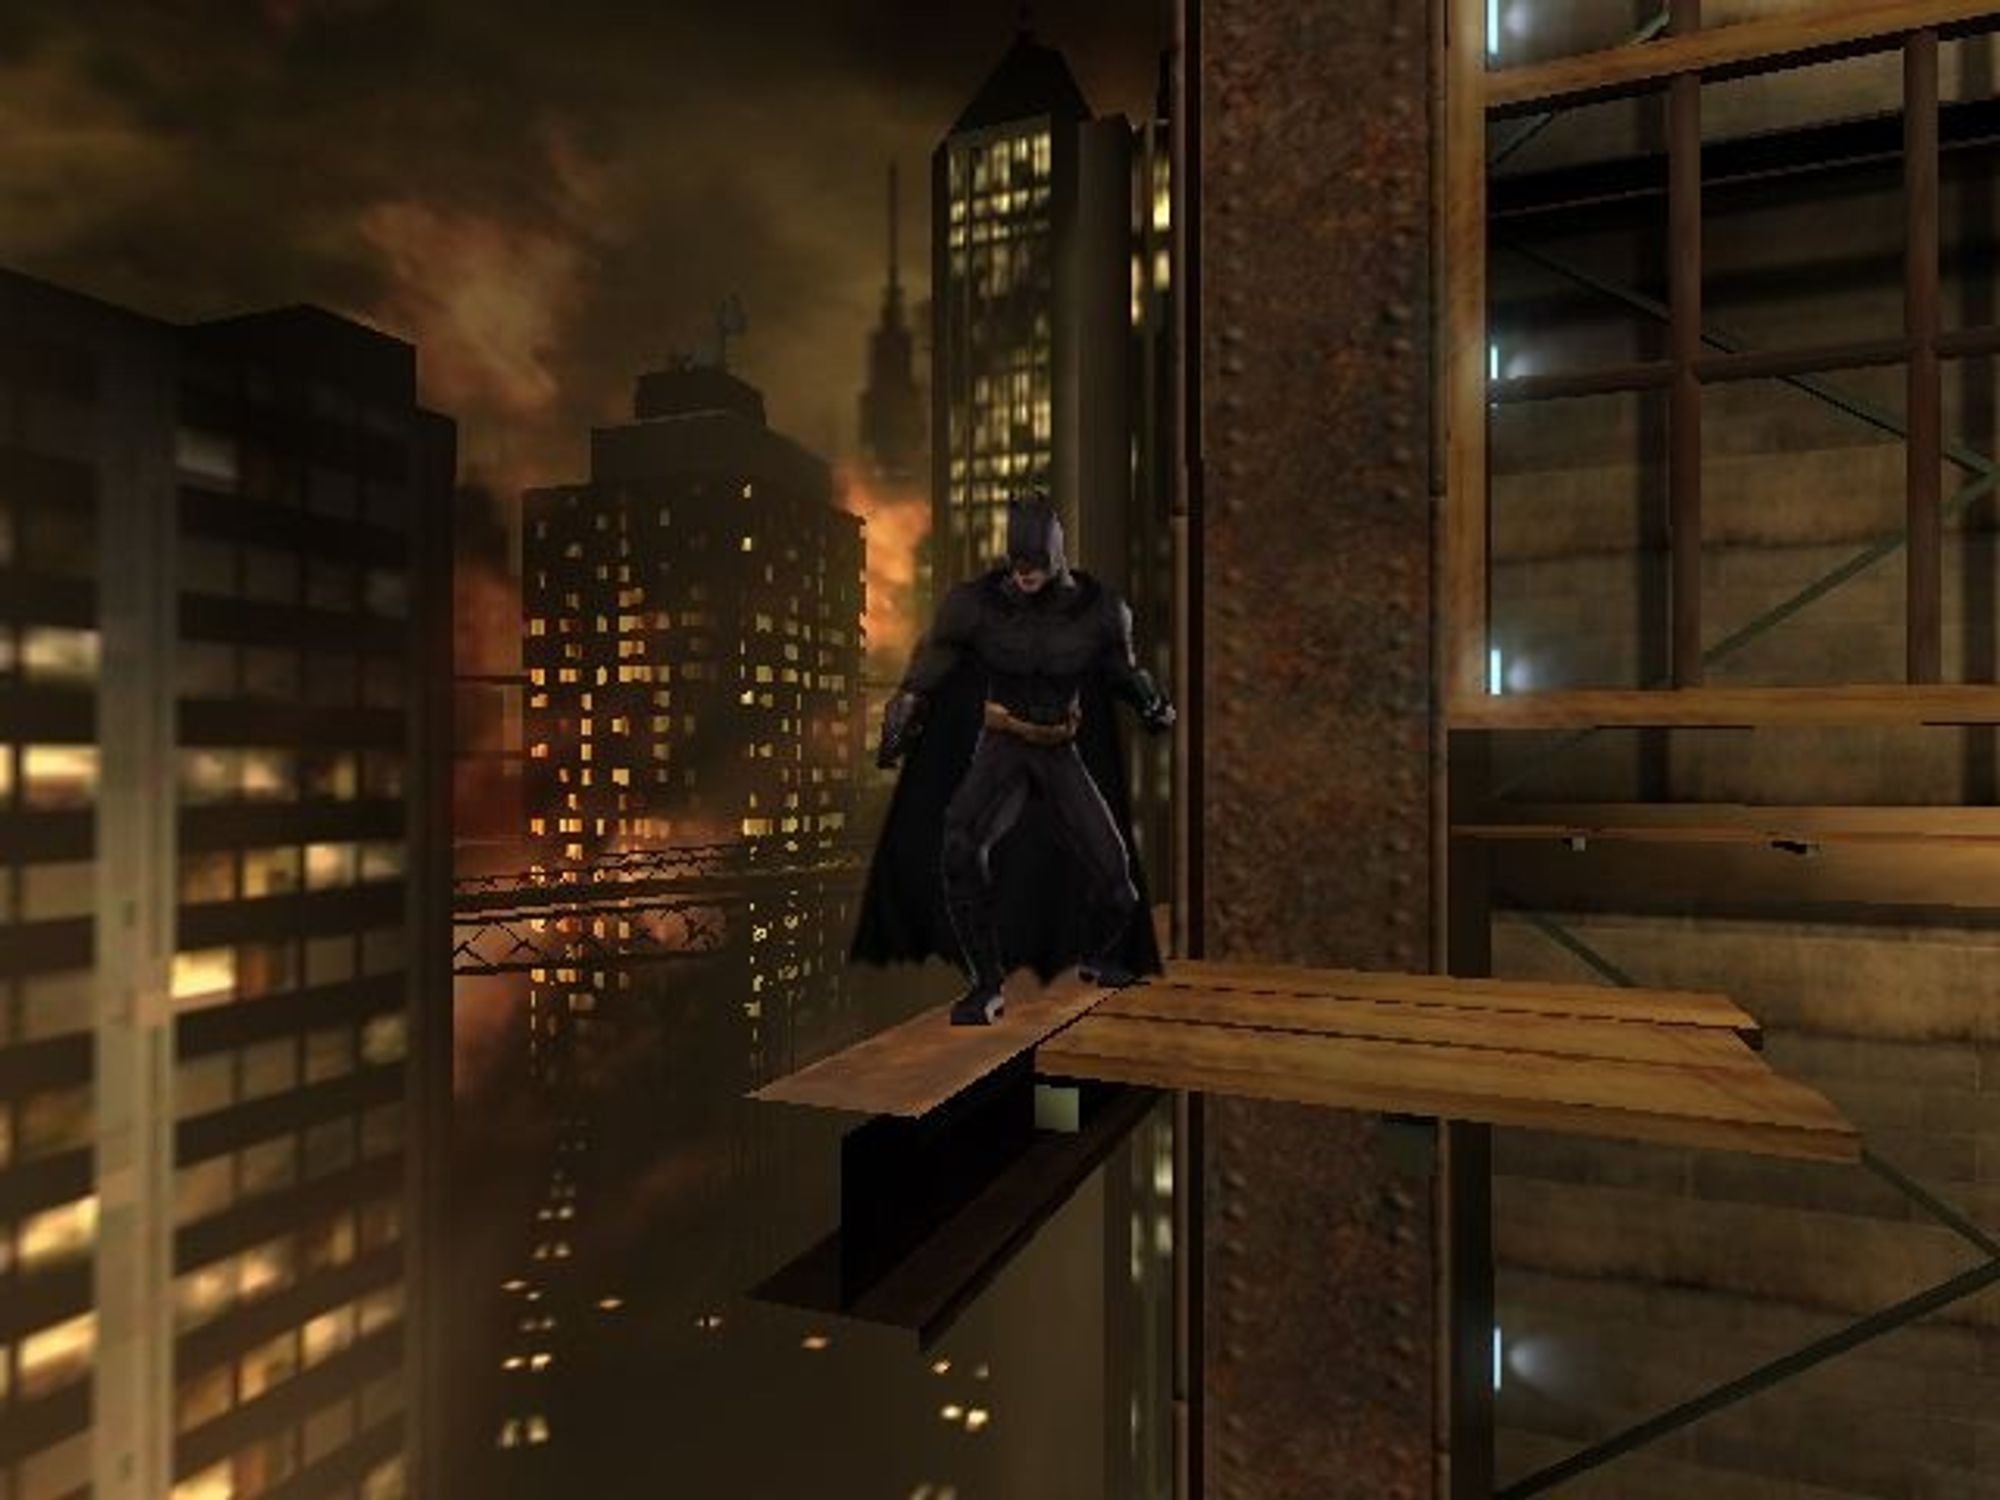 Batman ps2. Batman begins ps2. Batman begins игра для ps2. Batman begins ps2 NTSC. Бэтмен начало игра.